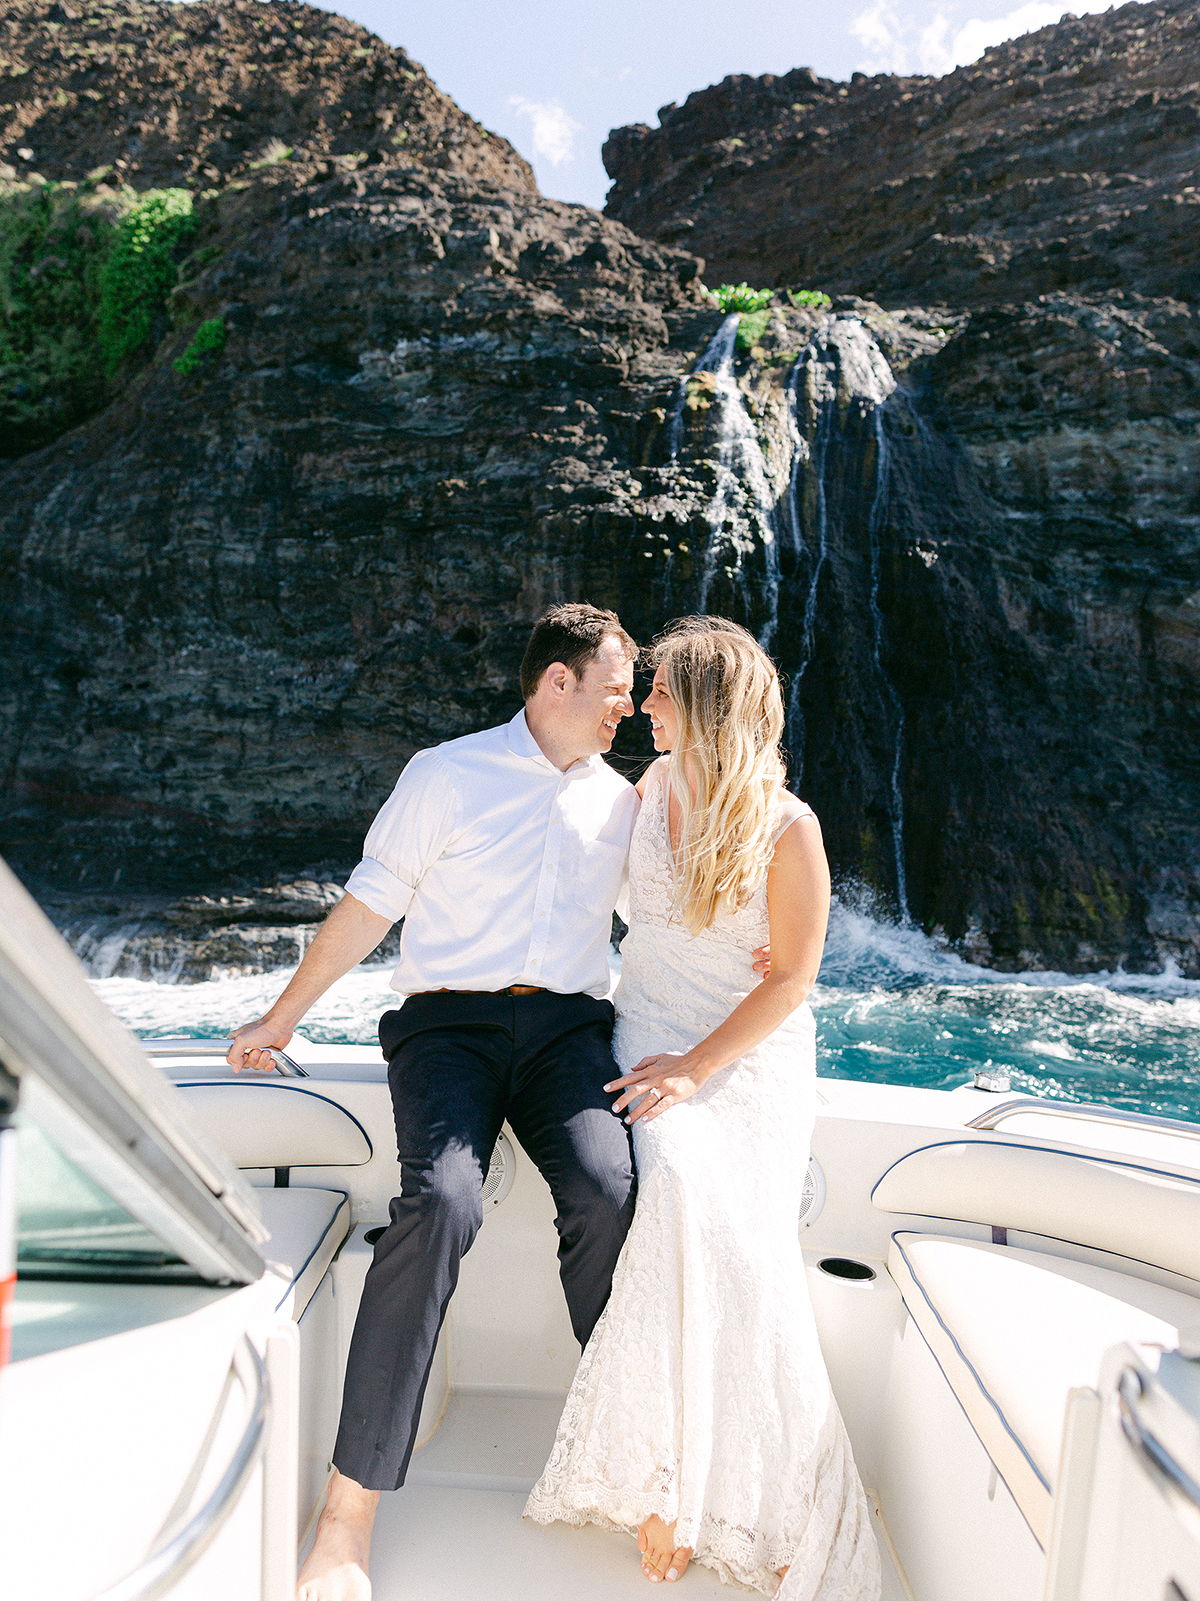 Napali coast boat cruise wedding photographer